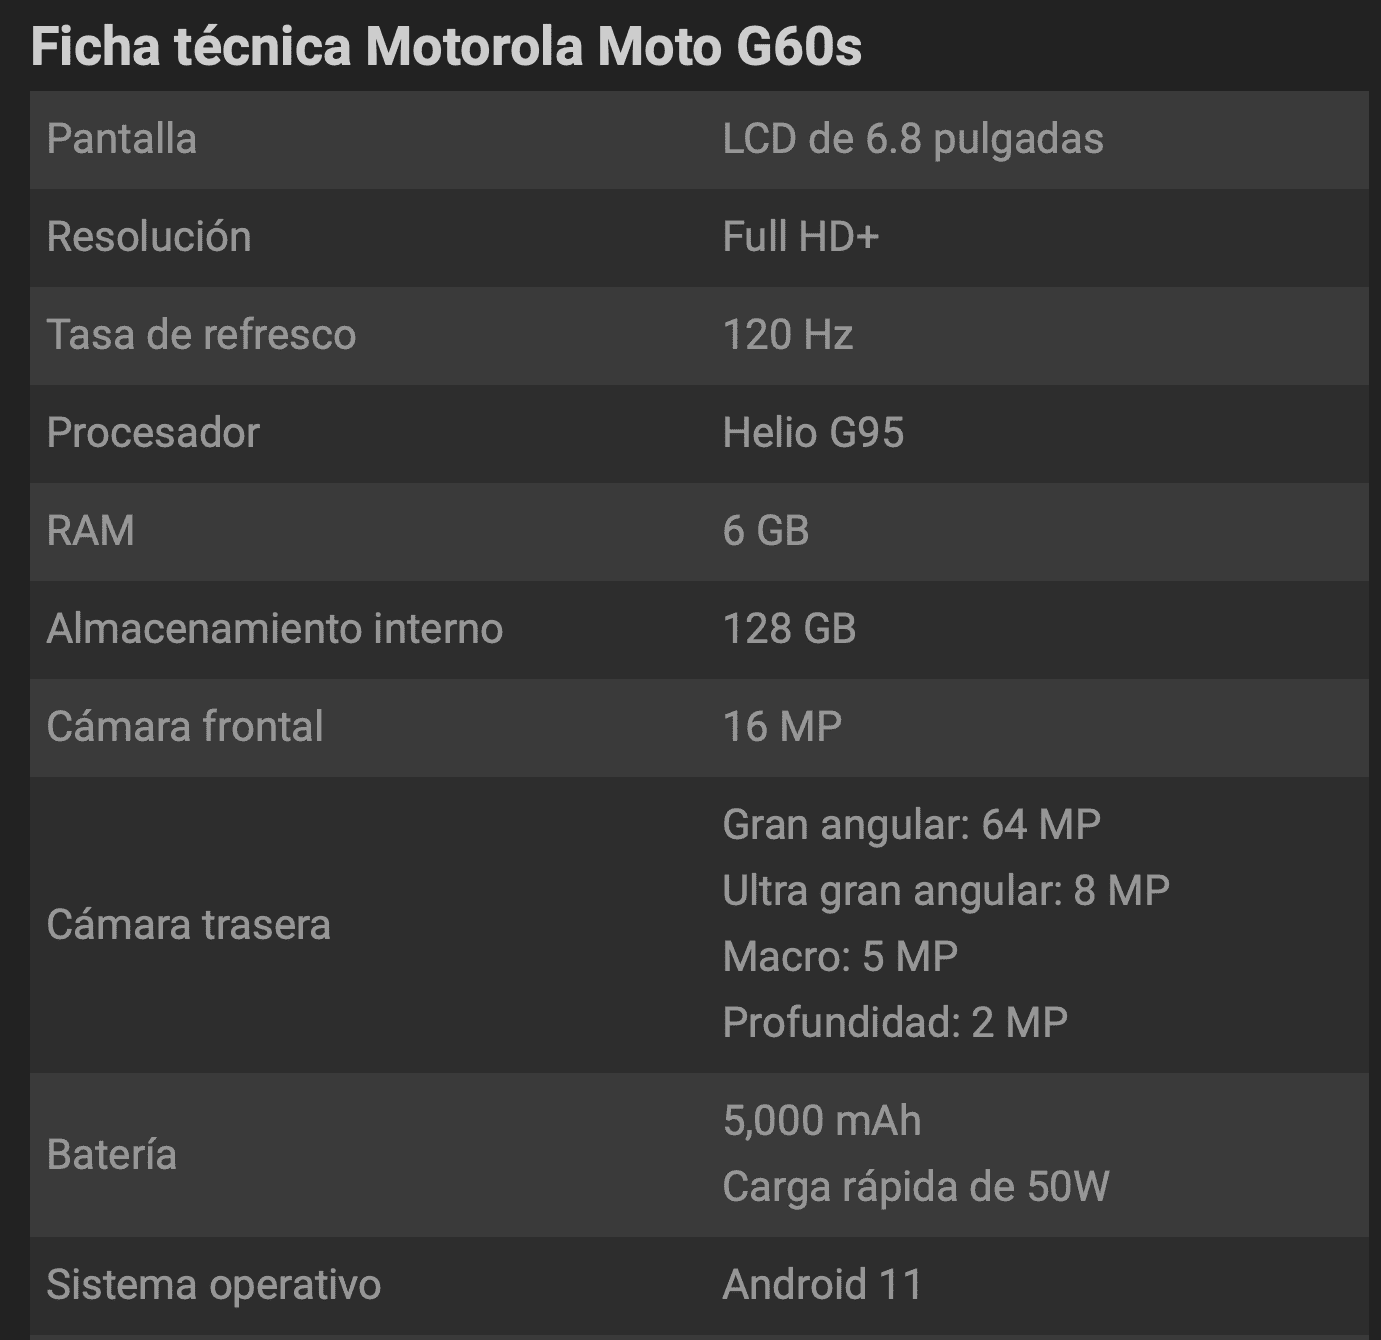 Motorola Moto G60s: Ficha Técnica, Onde Comprar, Preço E Principais Informações